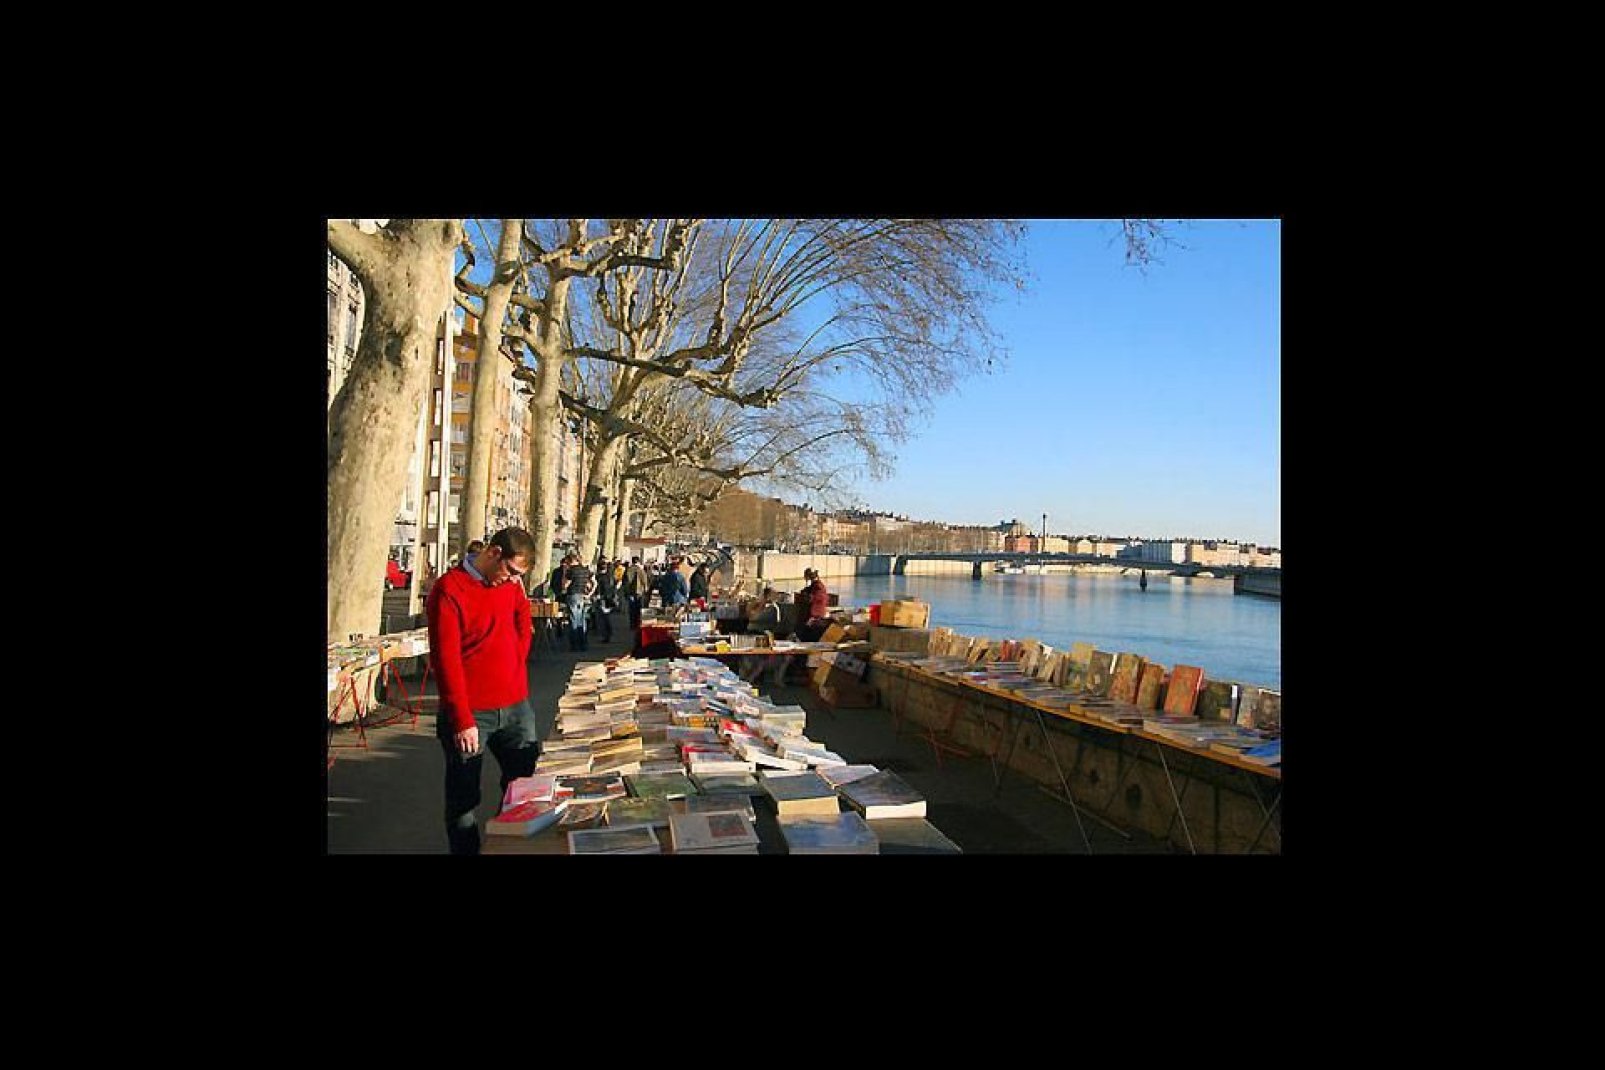 Allí se organizan varios mercadillos de libros. Los amantes de la literatura disfrutarán, sin duda, con la mayor librería al aire libre.